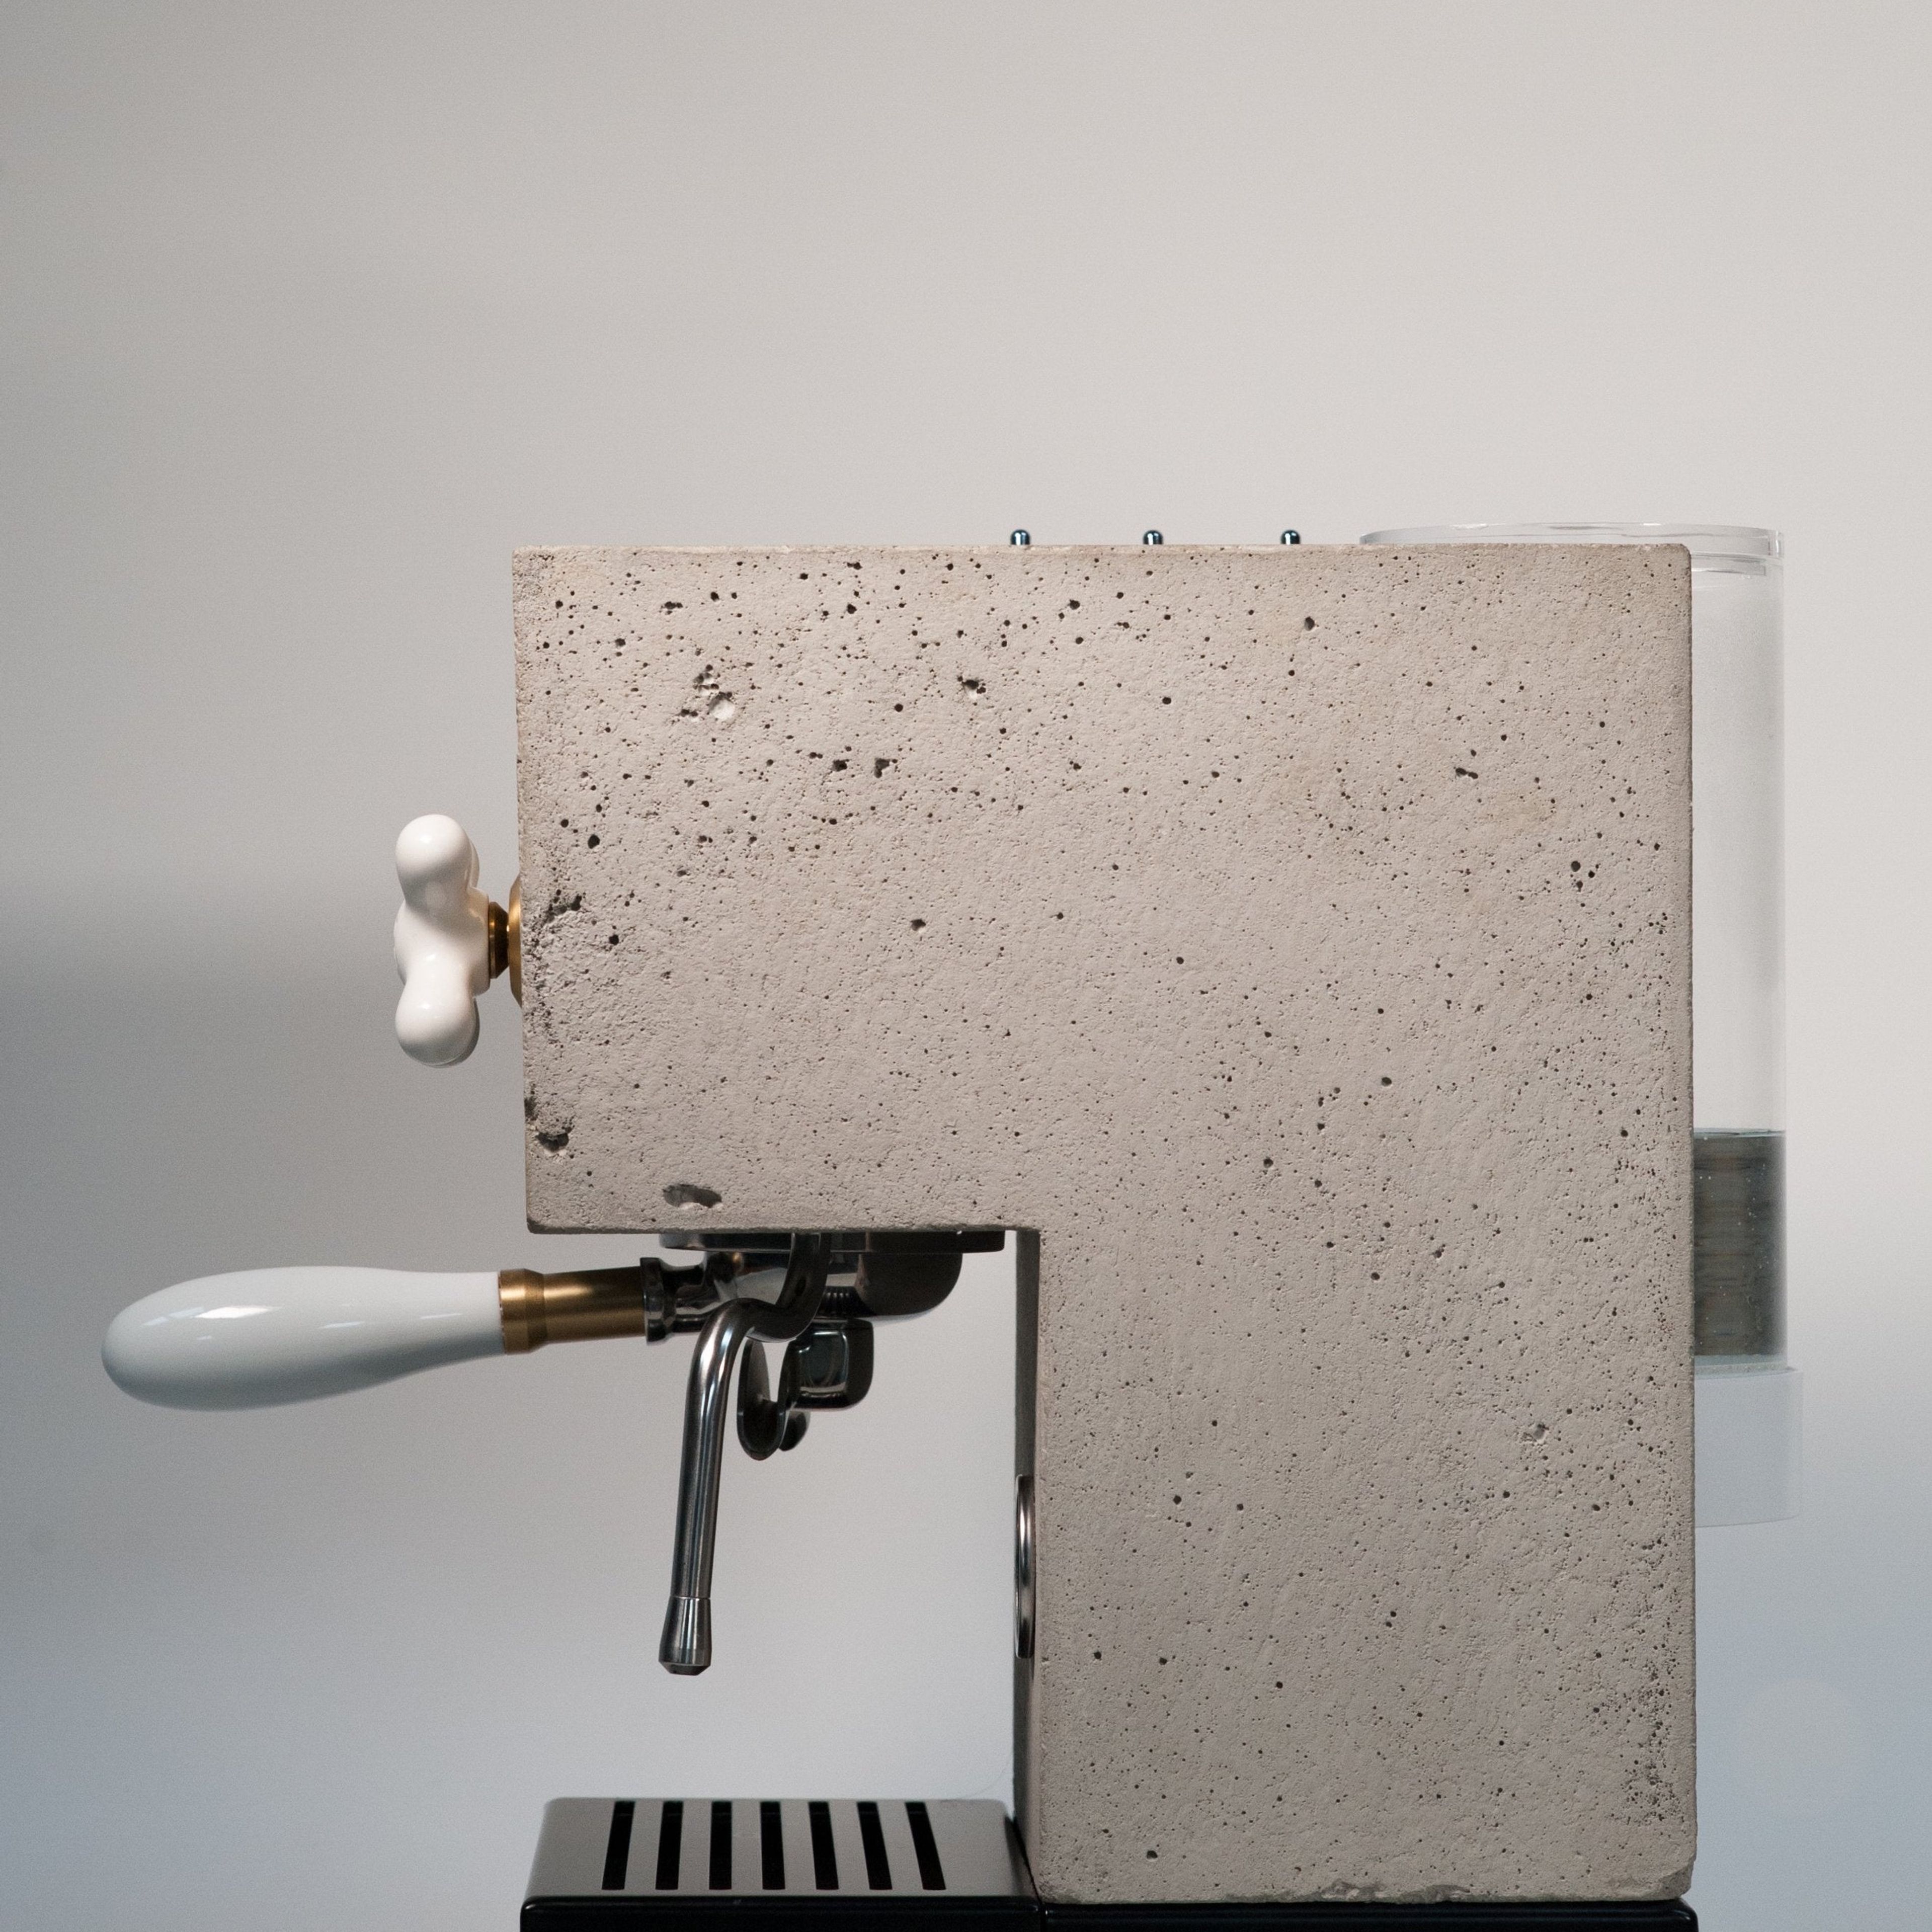 AnZa Concrete Espresso Machine